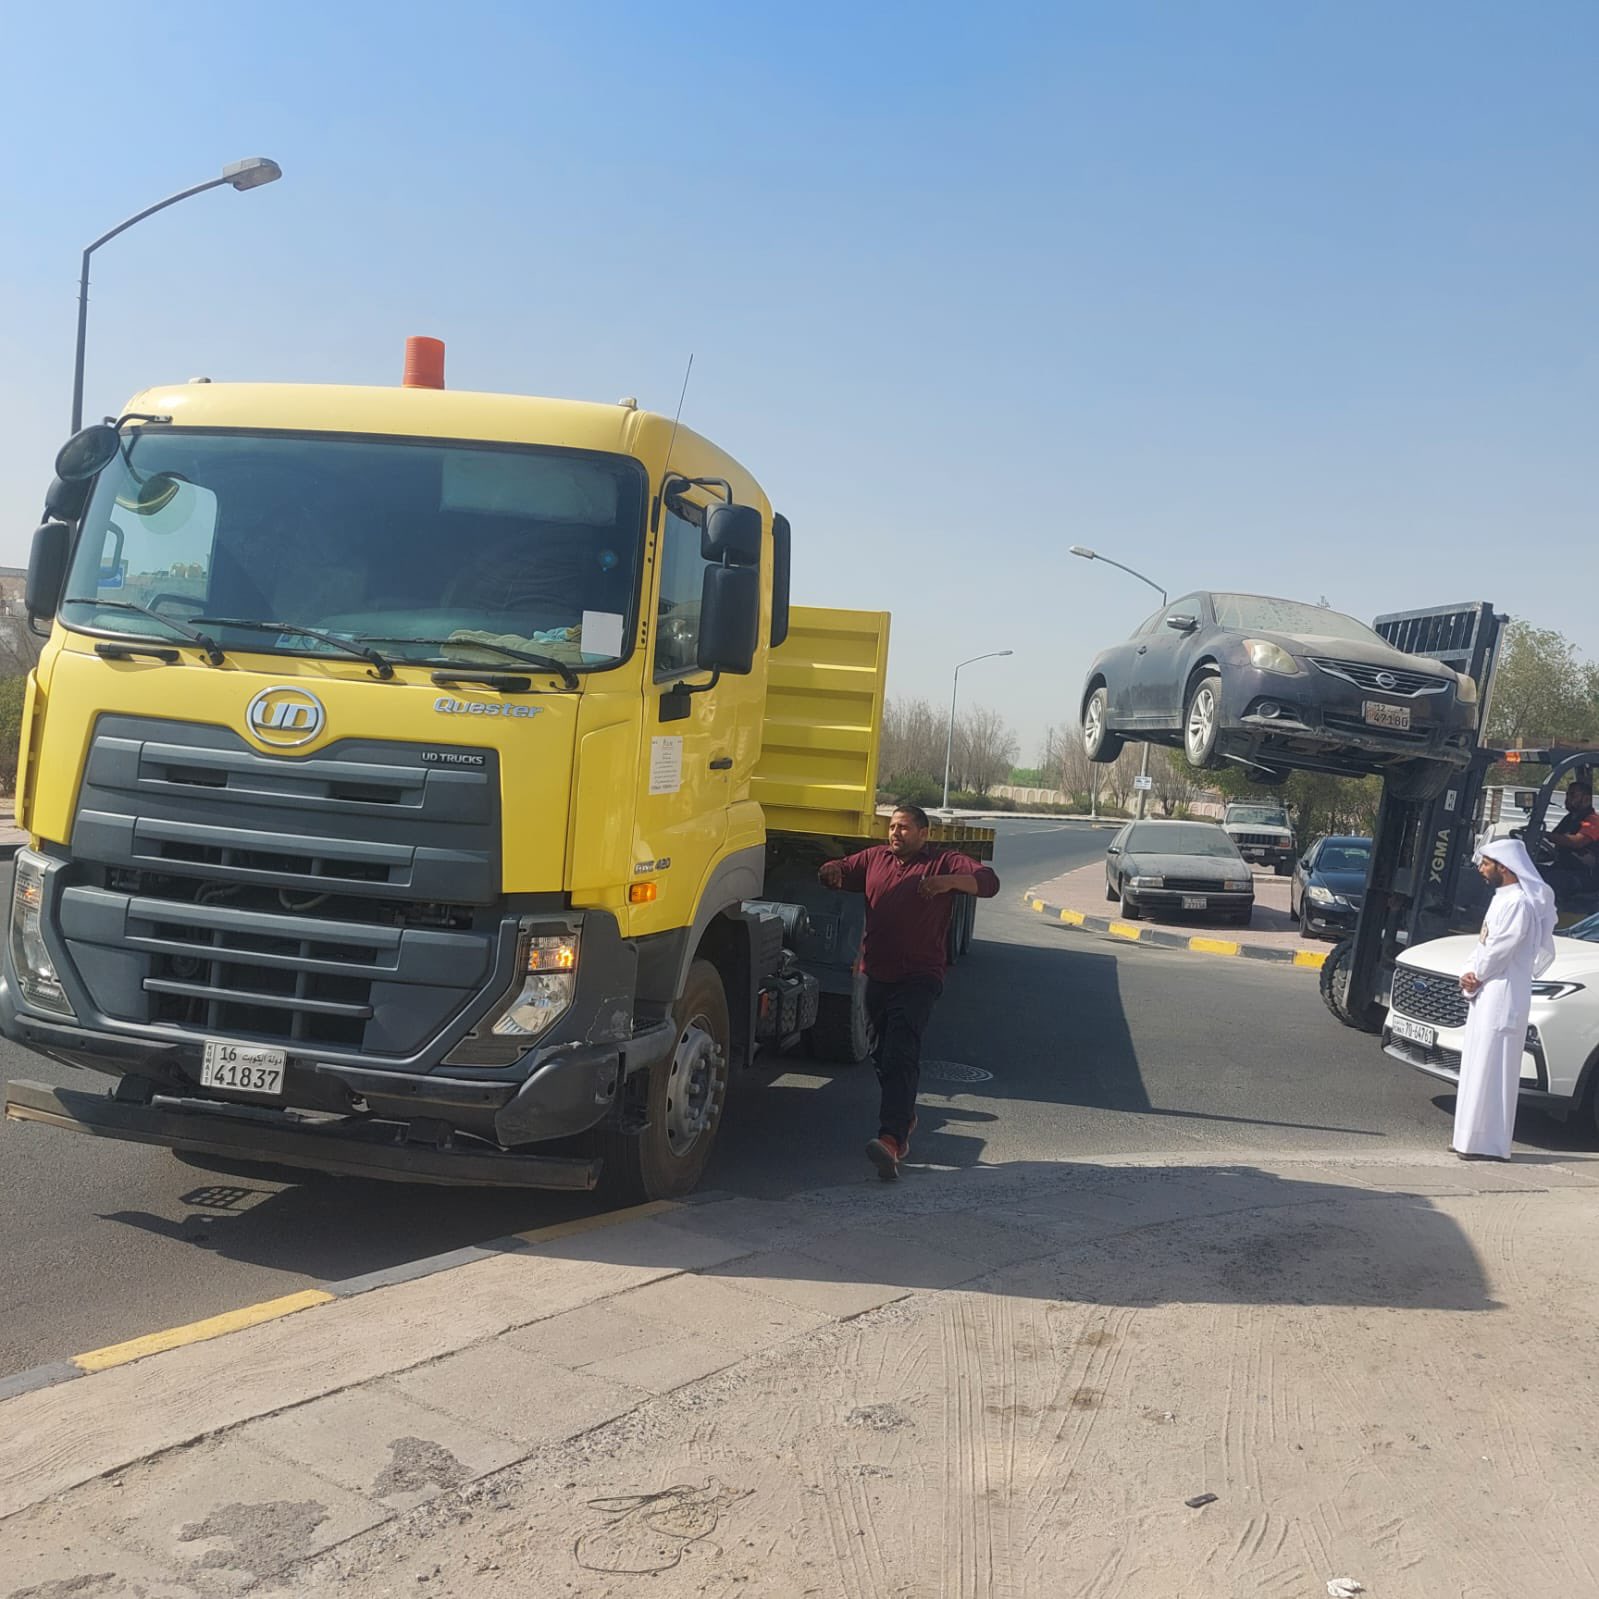 البلدية: رفع المركبات المهملة والعربات المتنقلة المخالفة بمحافظة مبارك الكبير